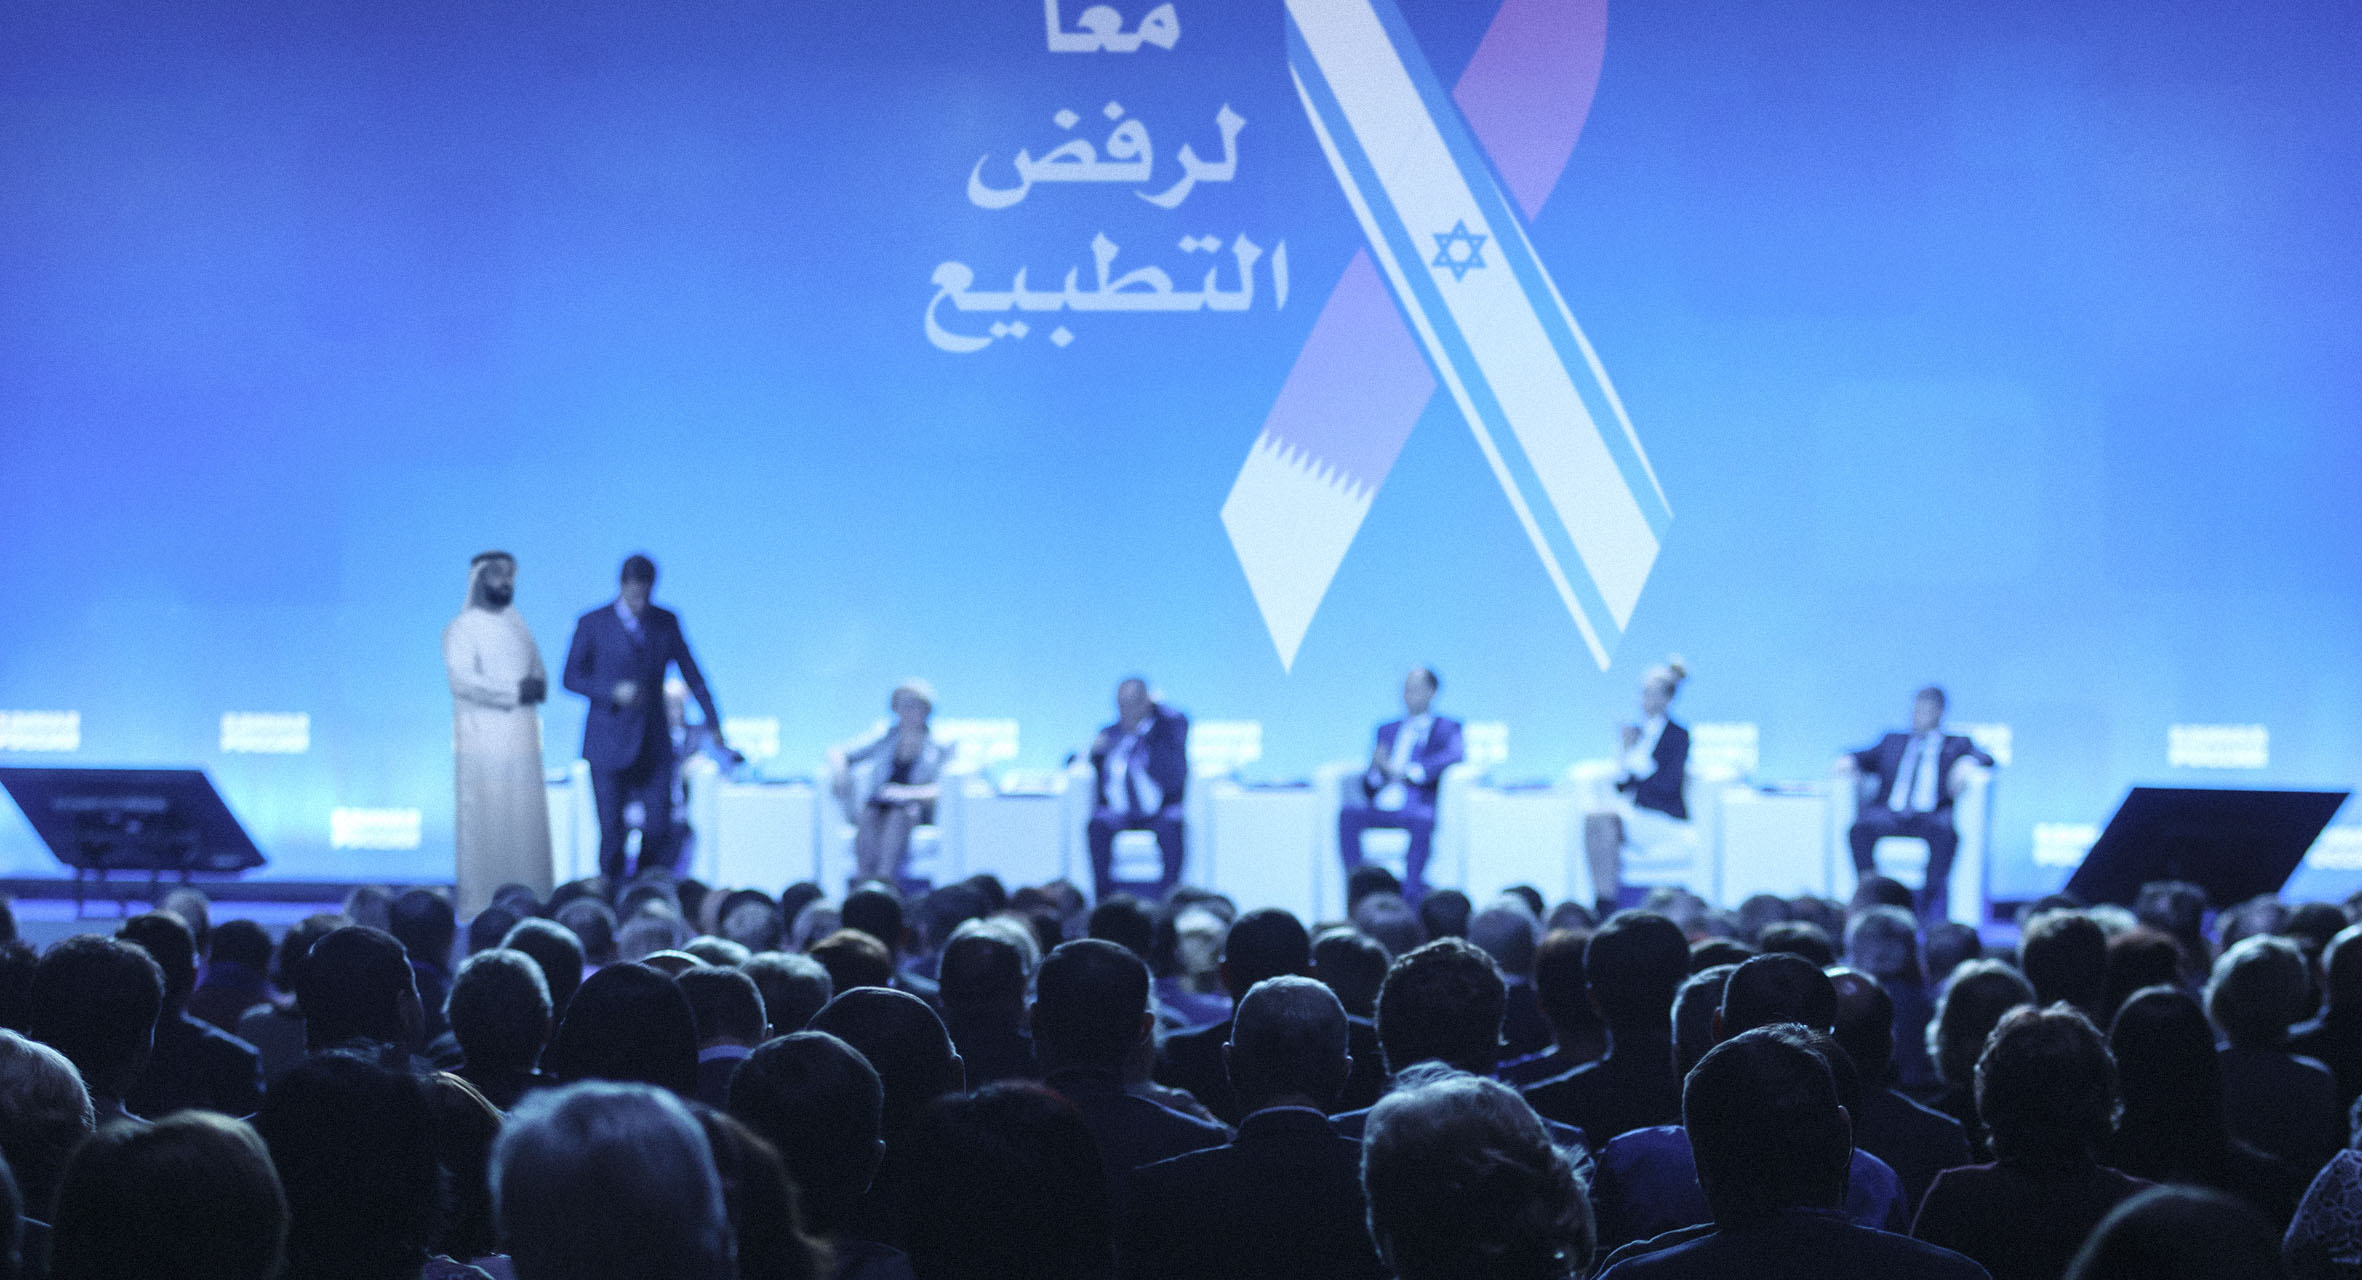 صورة قطر تستضيف قادة اليمين الإسرائيلي المُتطرف للمشاركة في مؤتمر لرفض التطبيع الإماراتي